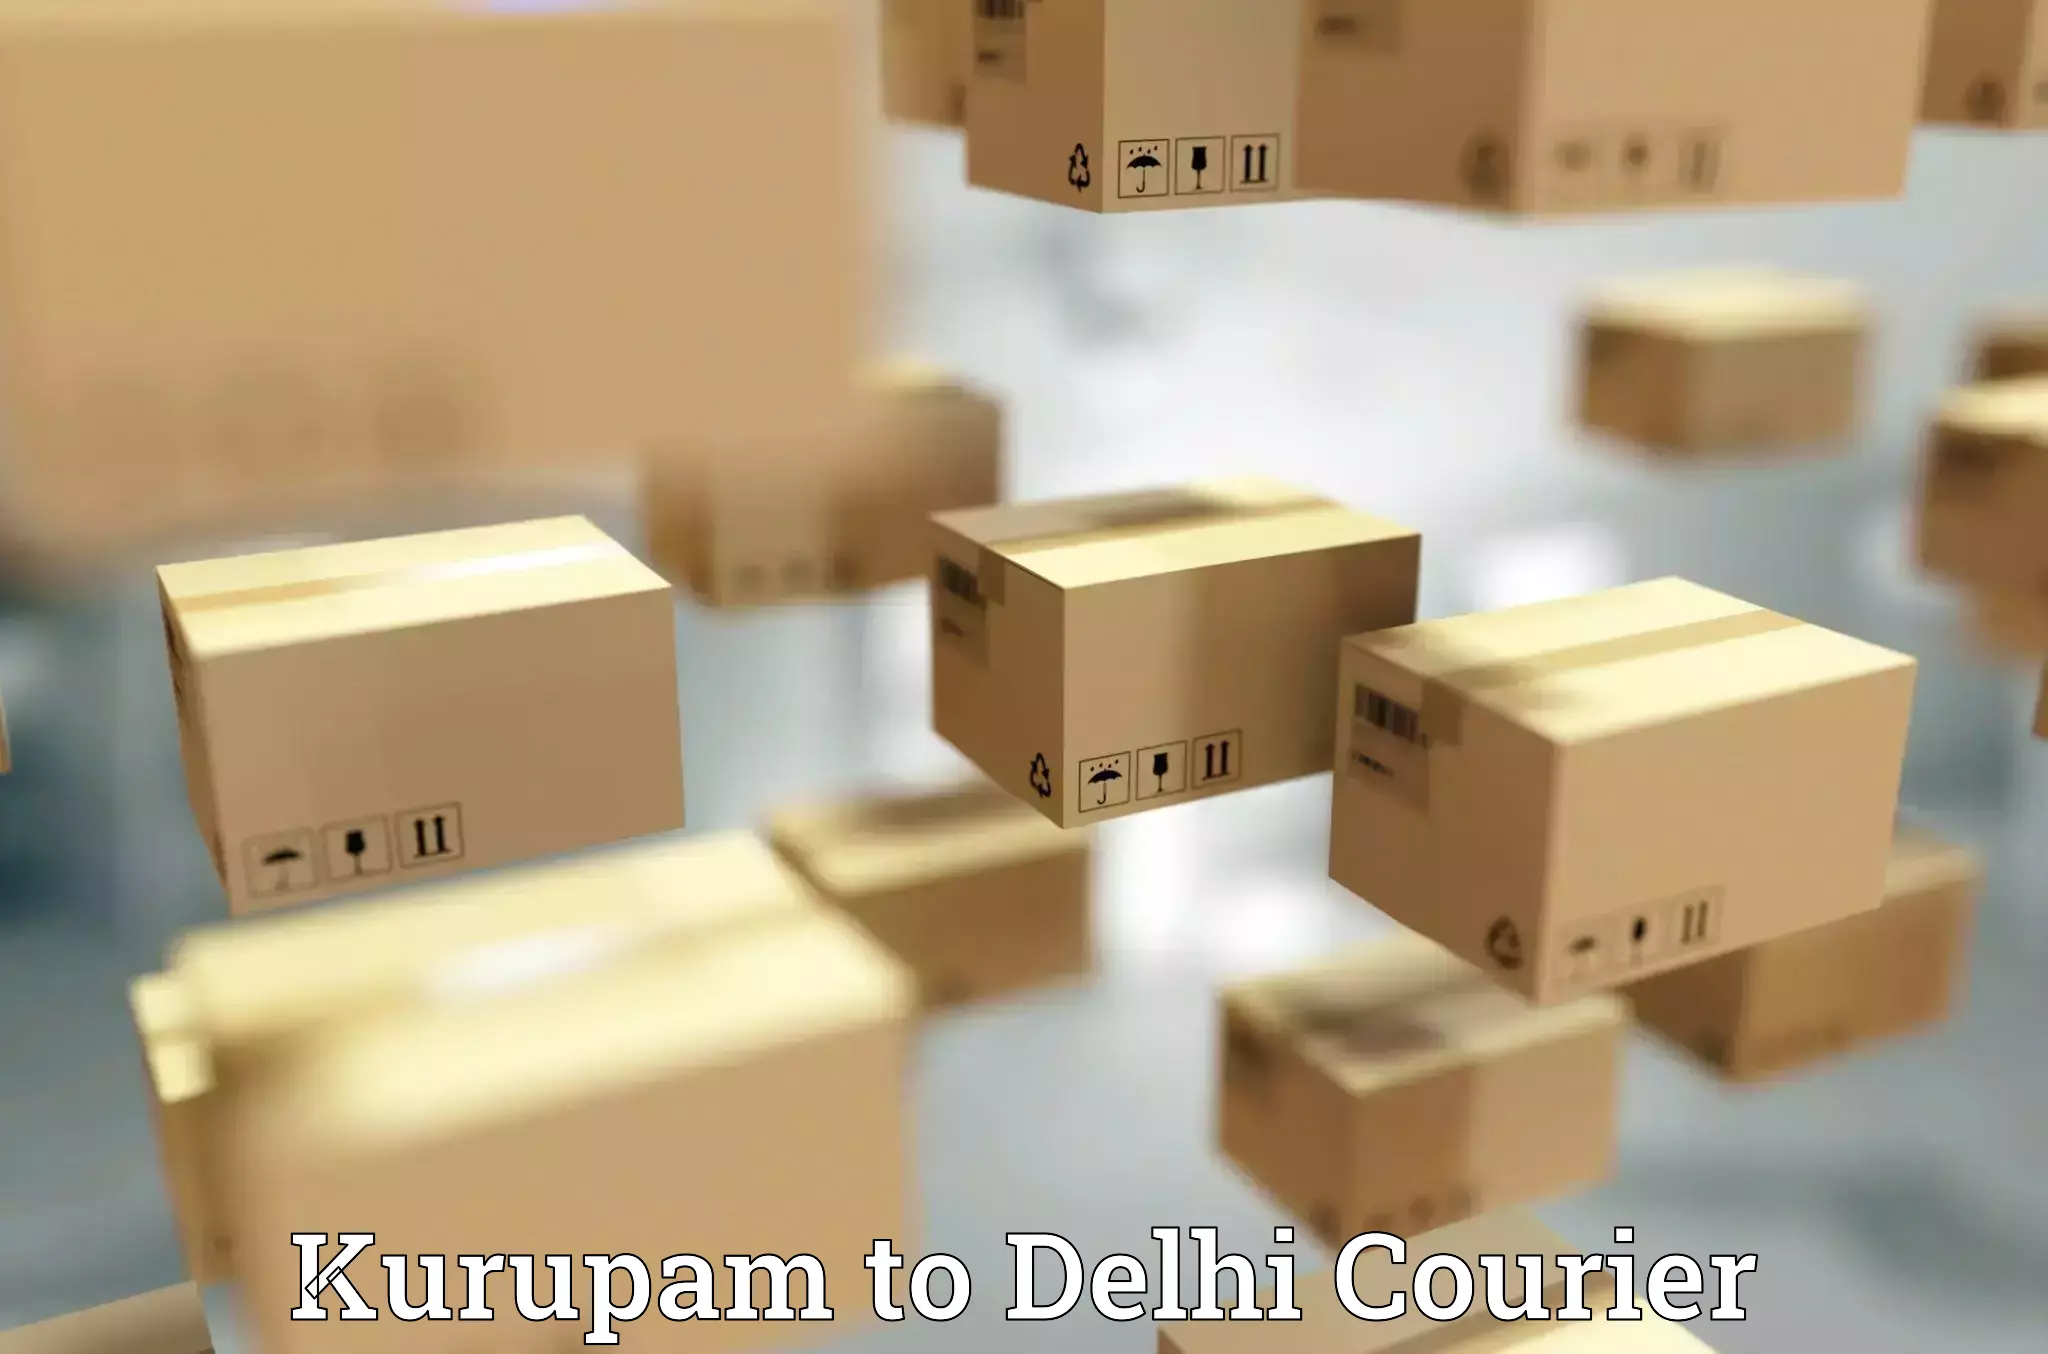 High-capacity shipping options Kurupam to Jawaharlal Nehru University New Delhi